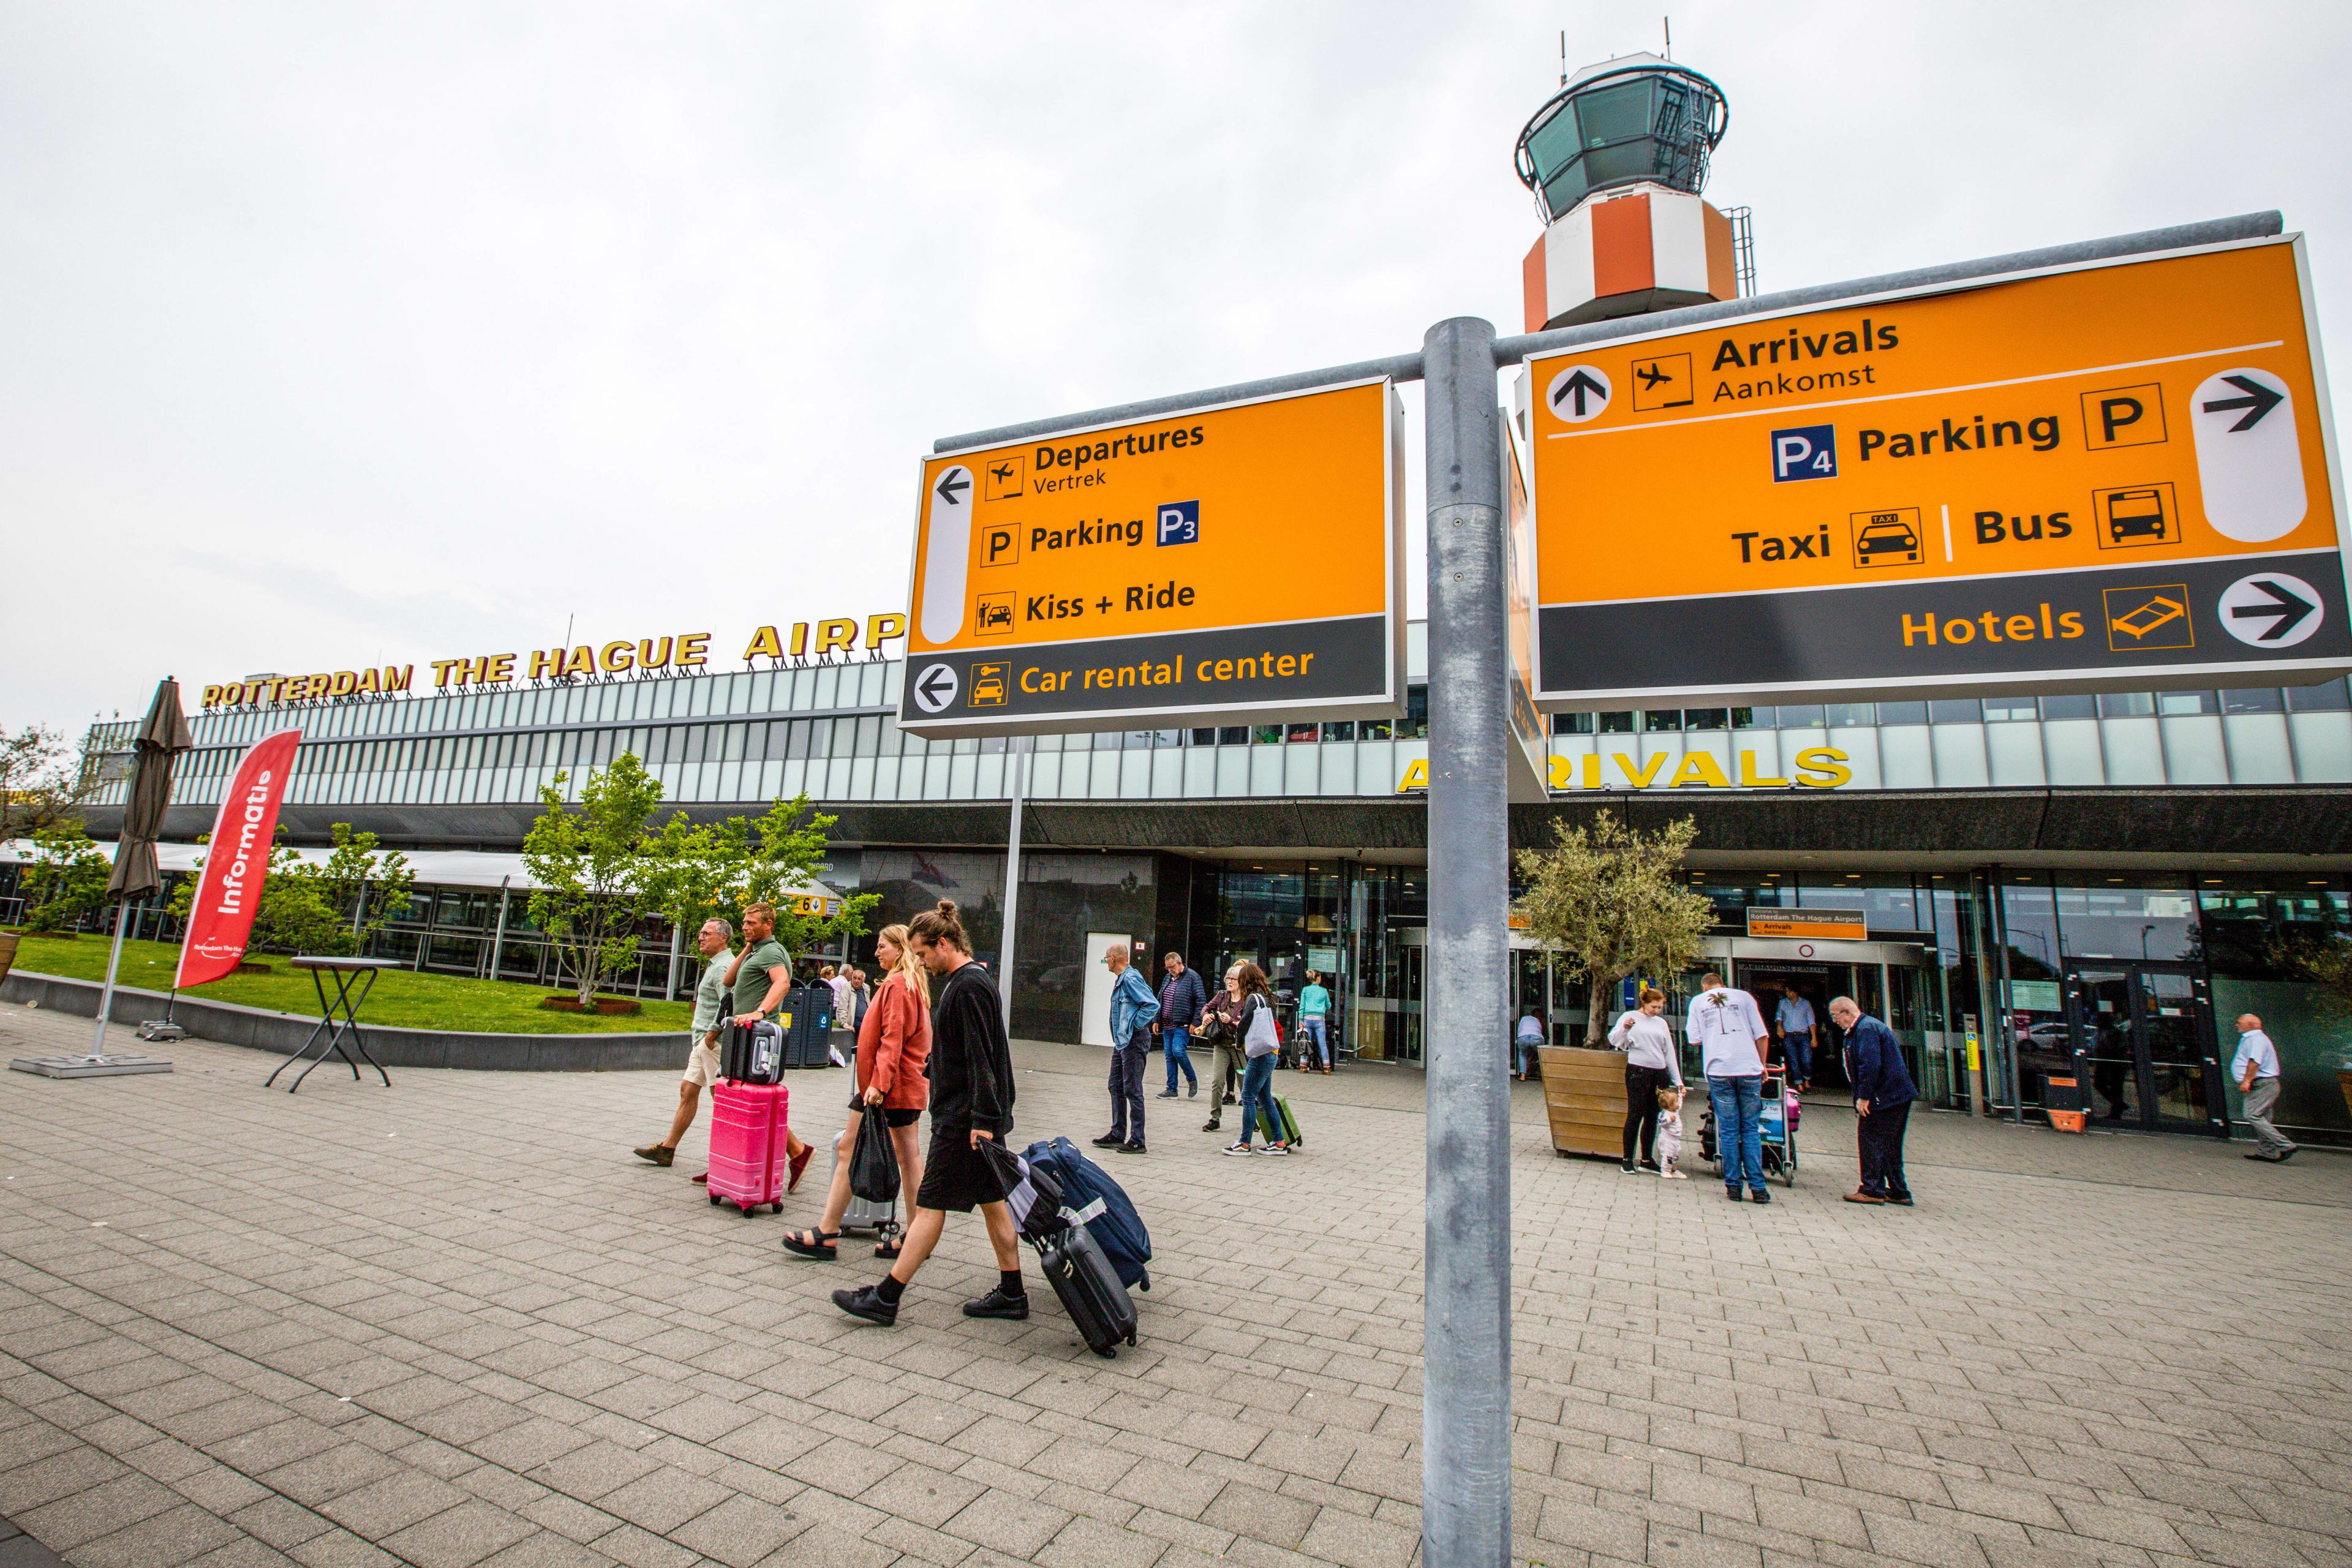 Steeds meer vakantiegangers mijden Schiphol: buitenlandse en regionale luchthavens in de lift